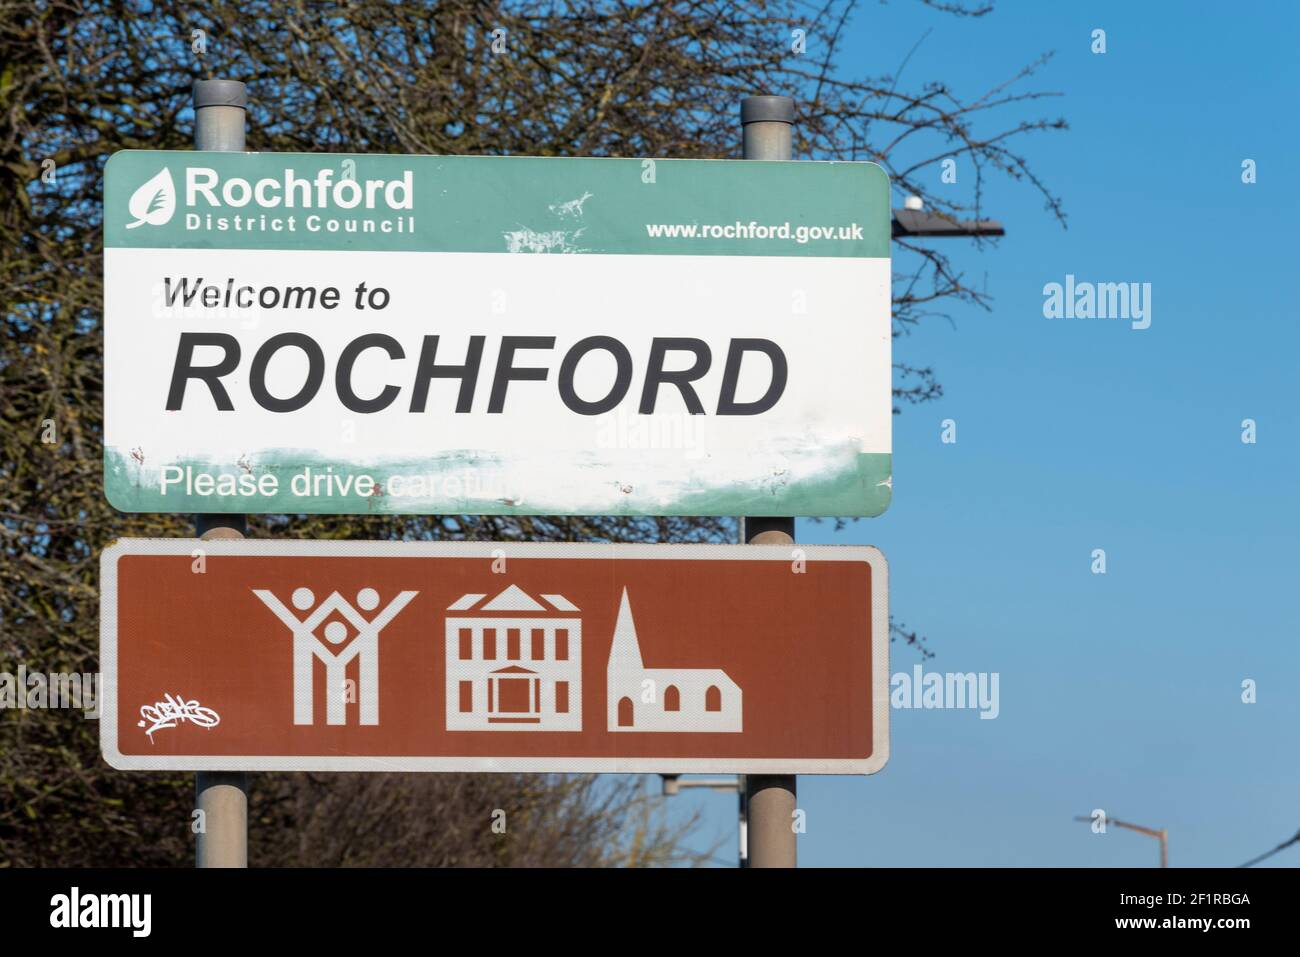 Bienvenue au panneau de Rochford, avec panneau marron avec les attractions locales. Symboles pour parc de campagne, maison d'architecture, d'intérêt historique, église. Décoloré Banque D'Images